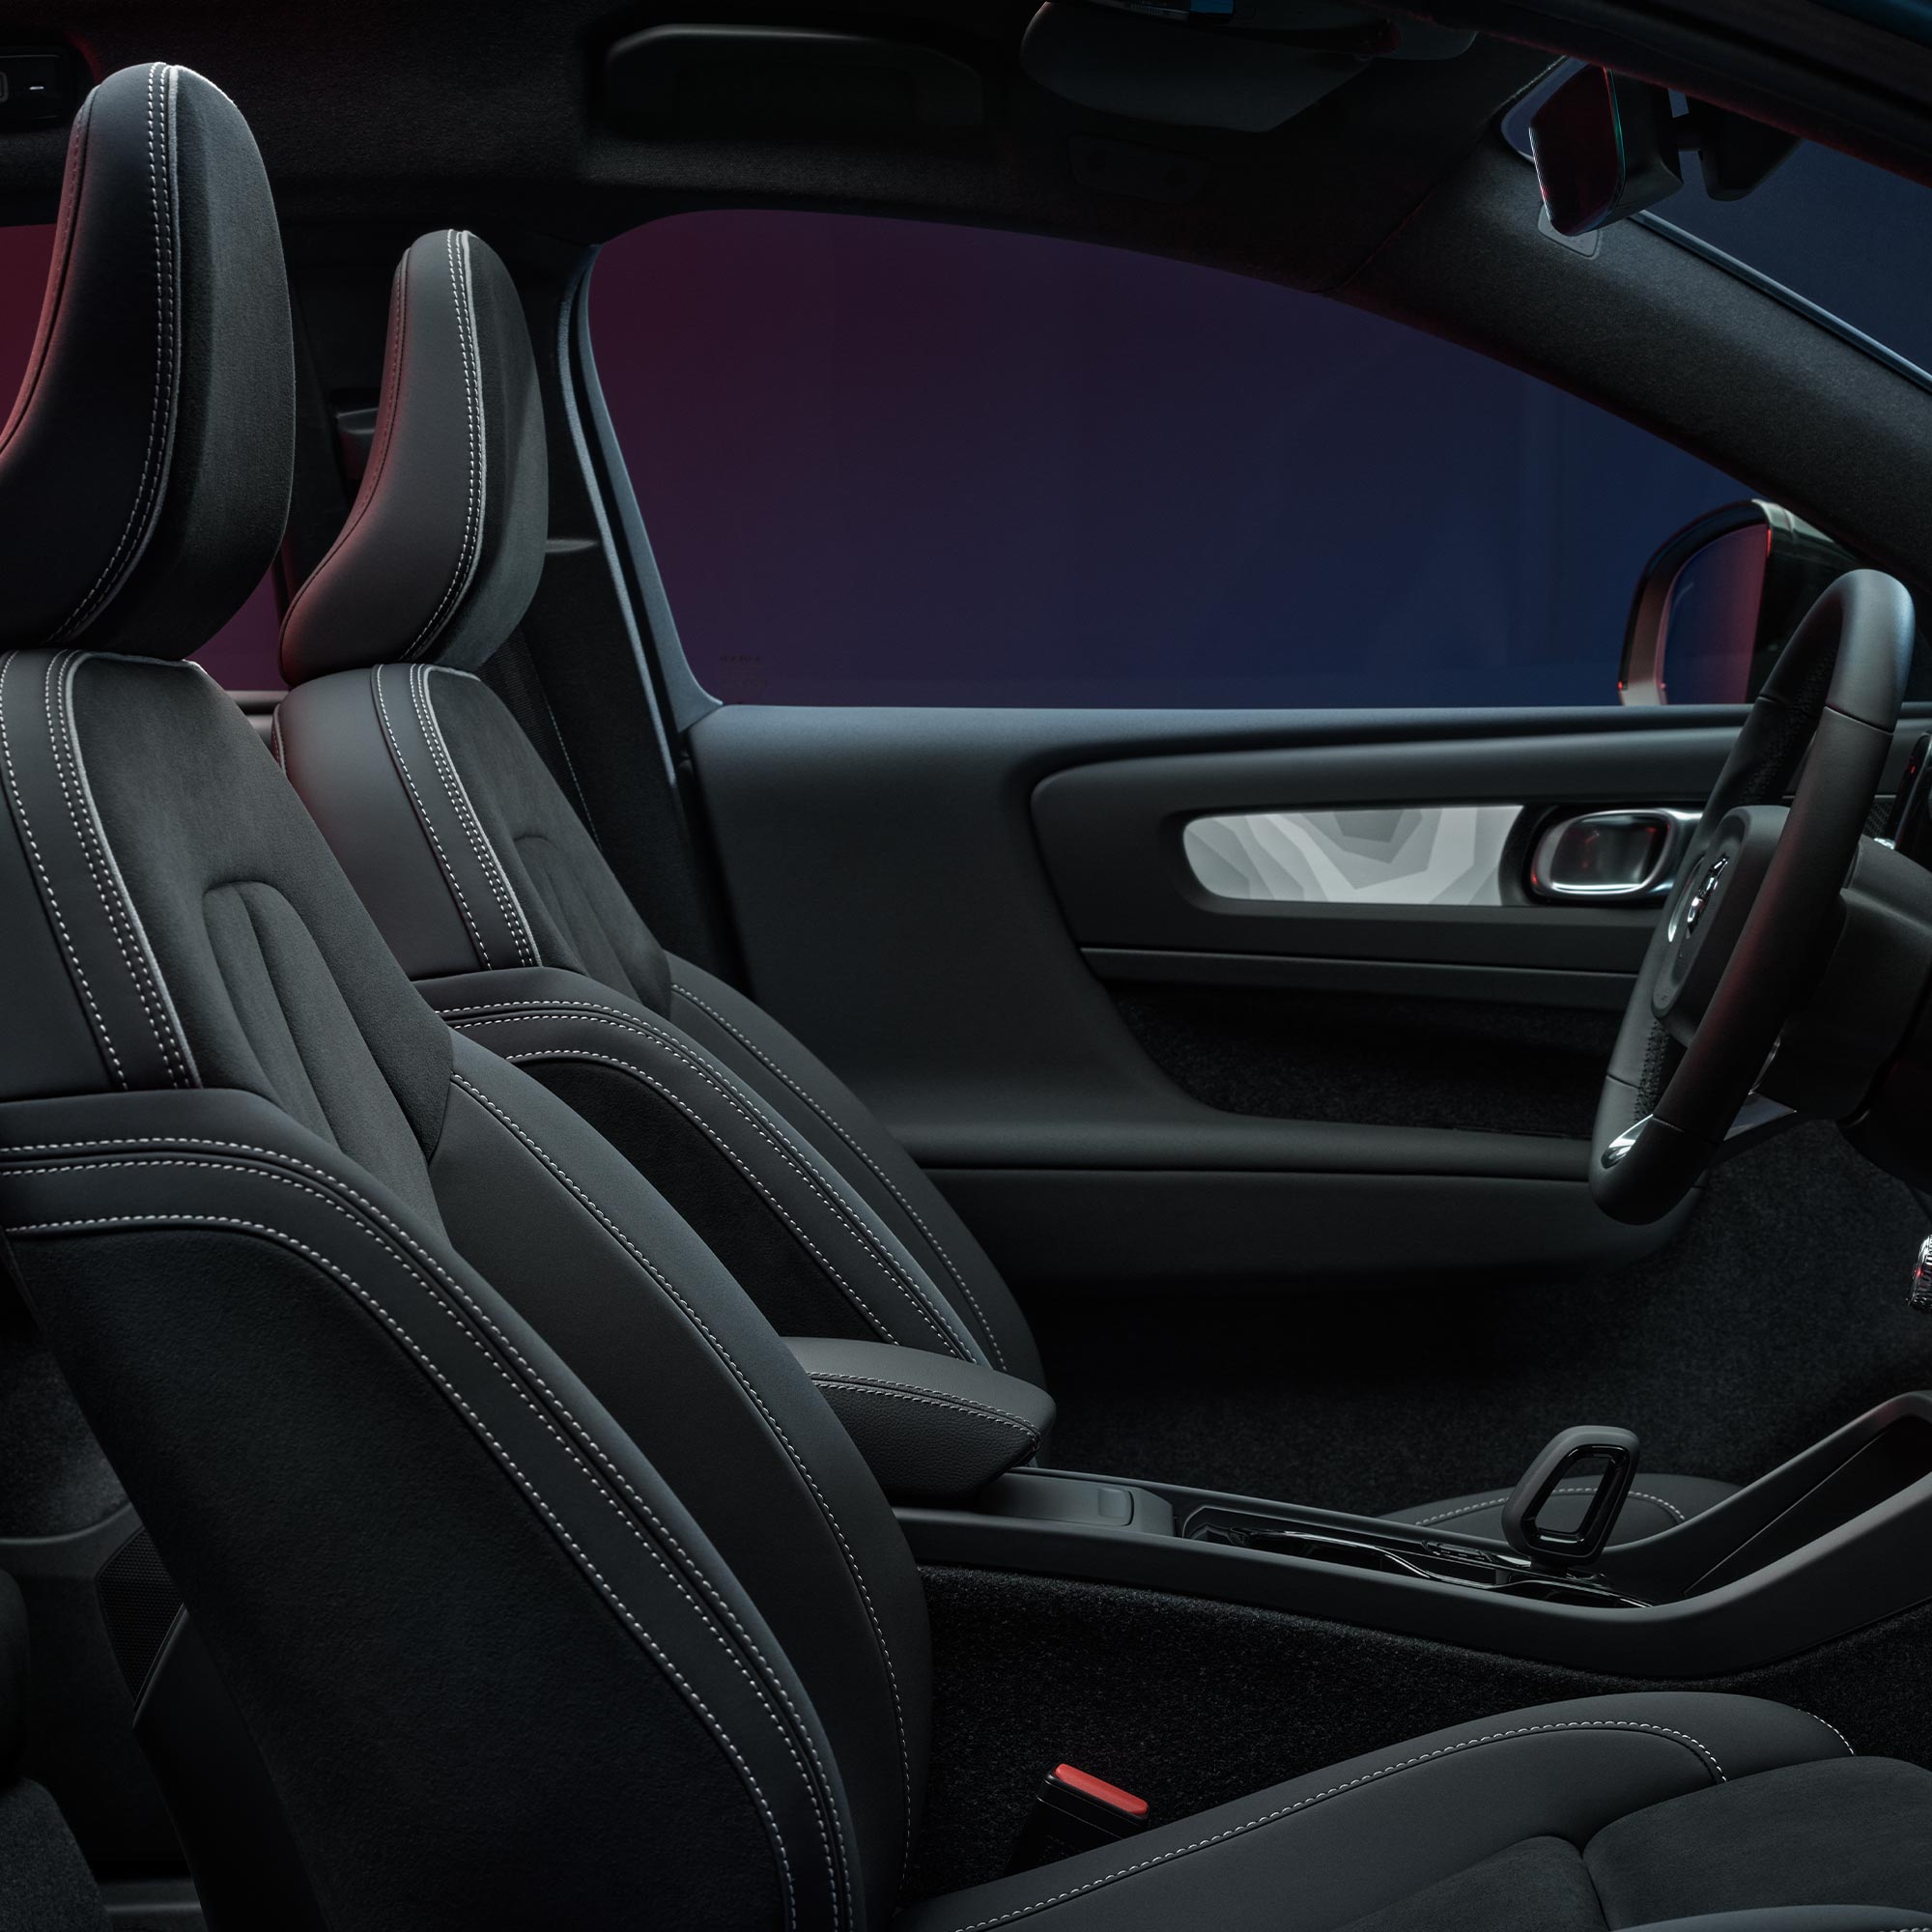 Pohled do interiéru vozu Volvo C40 Recharge na přední sedadla a volant.